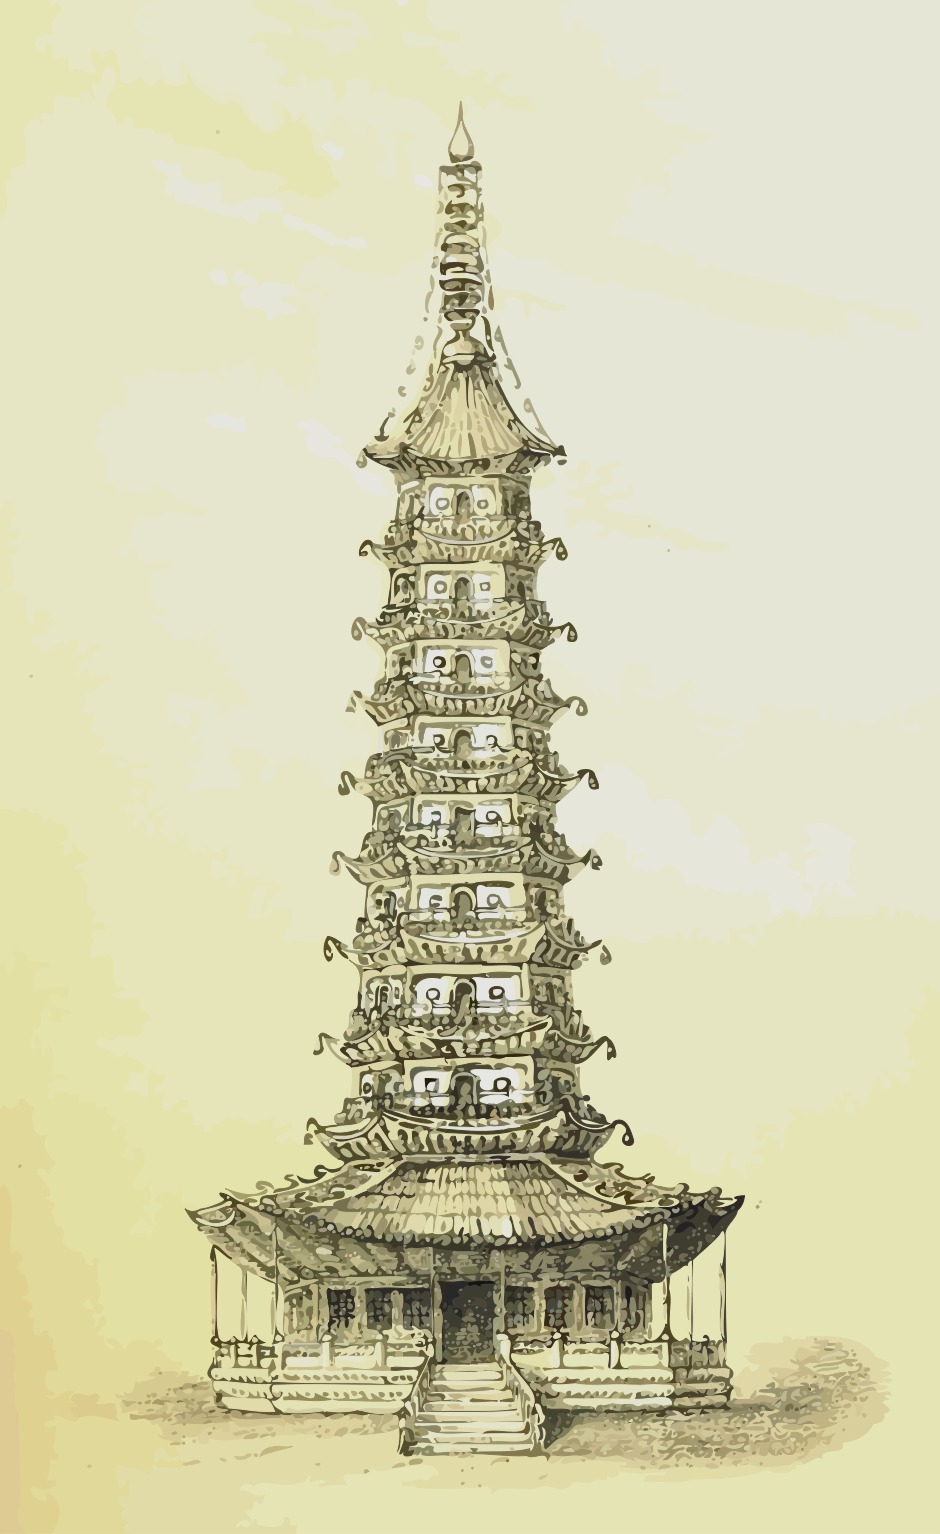 Tranh vẽ chì tháp chùa Trung Quốc